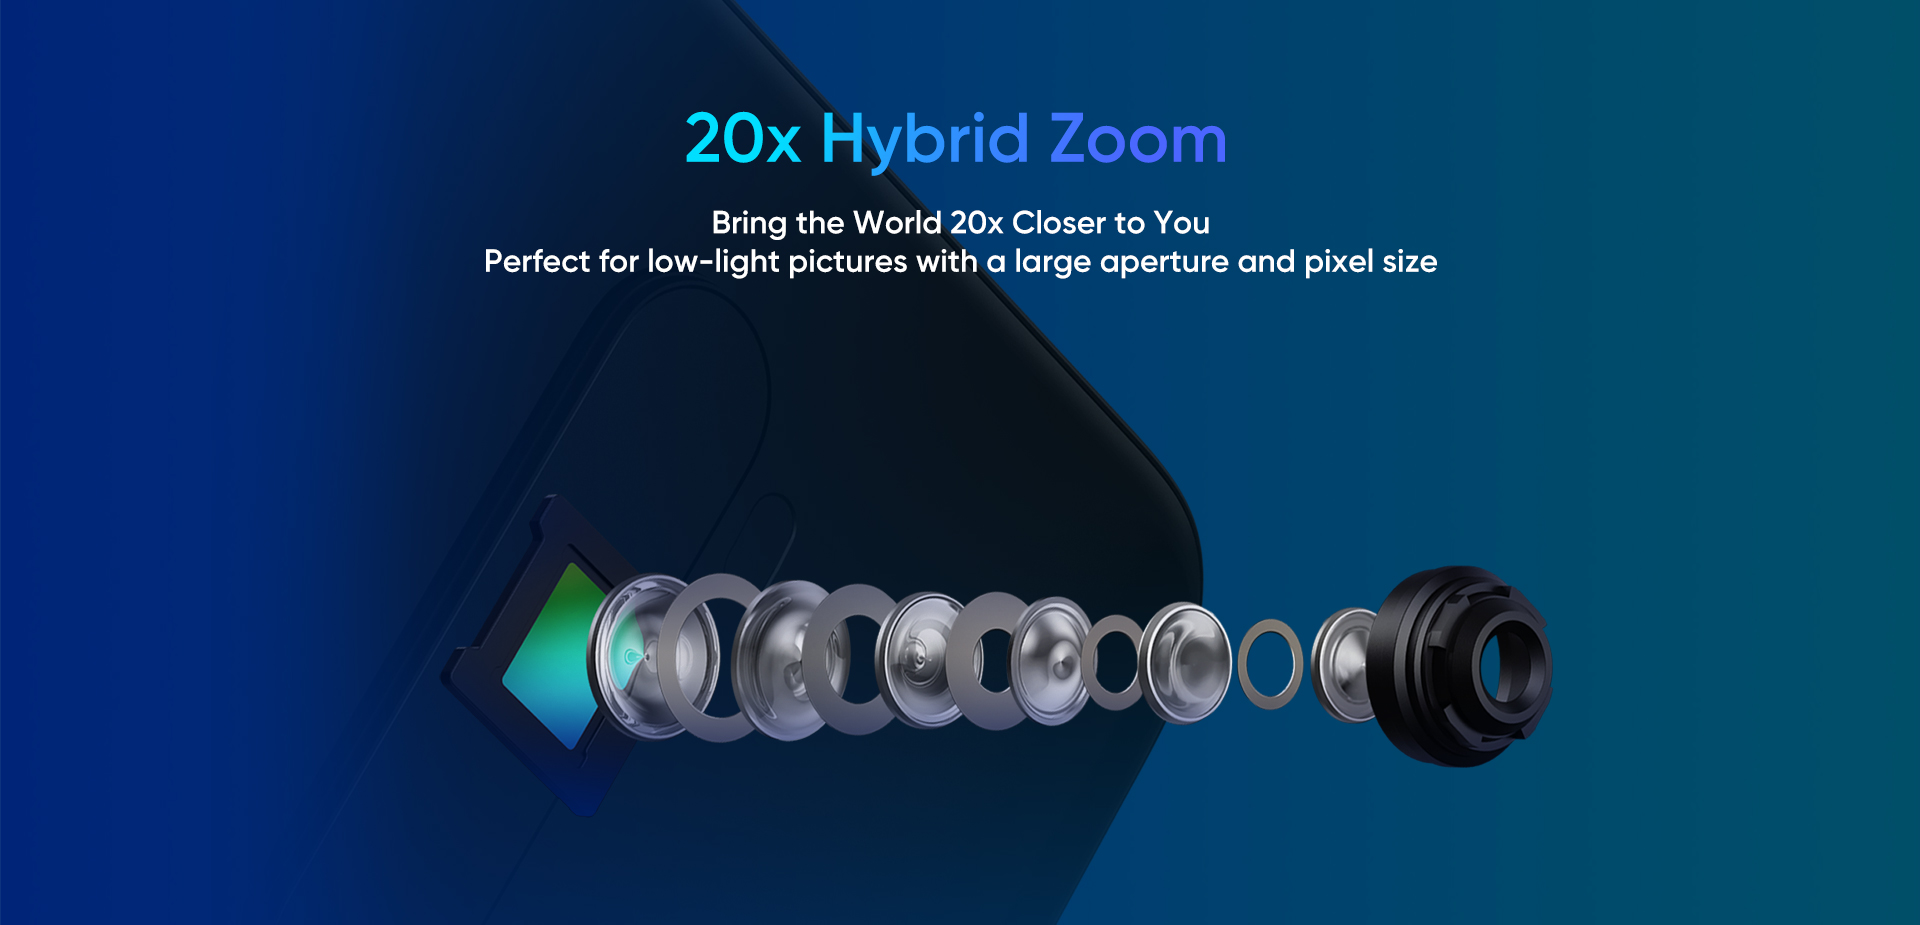 Chính thức xác nhận Realme X2 Pro sẽ có Snapdragon 855+, bốn camera sau và khả năng zoom hybrid 20x